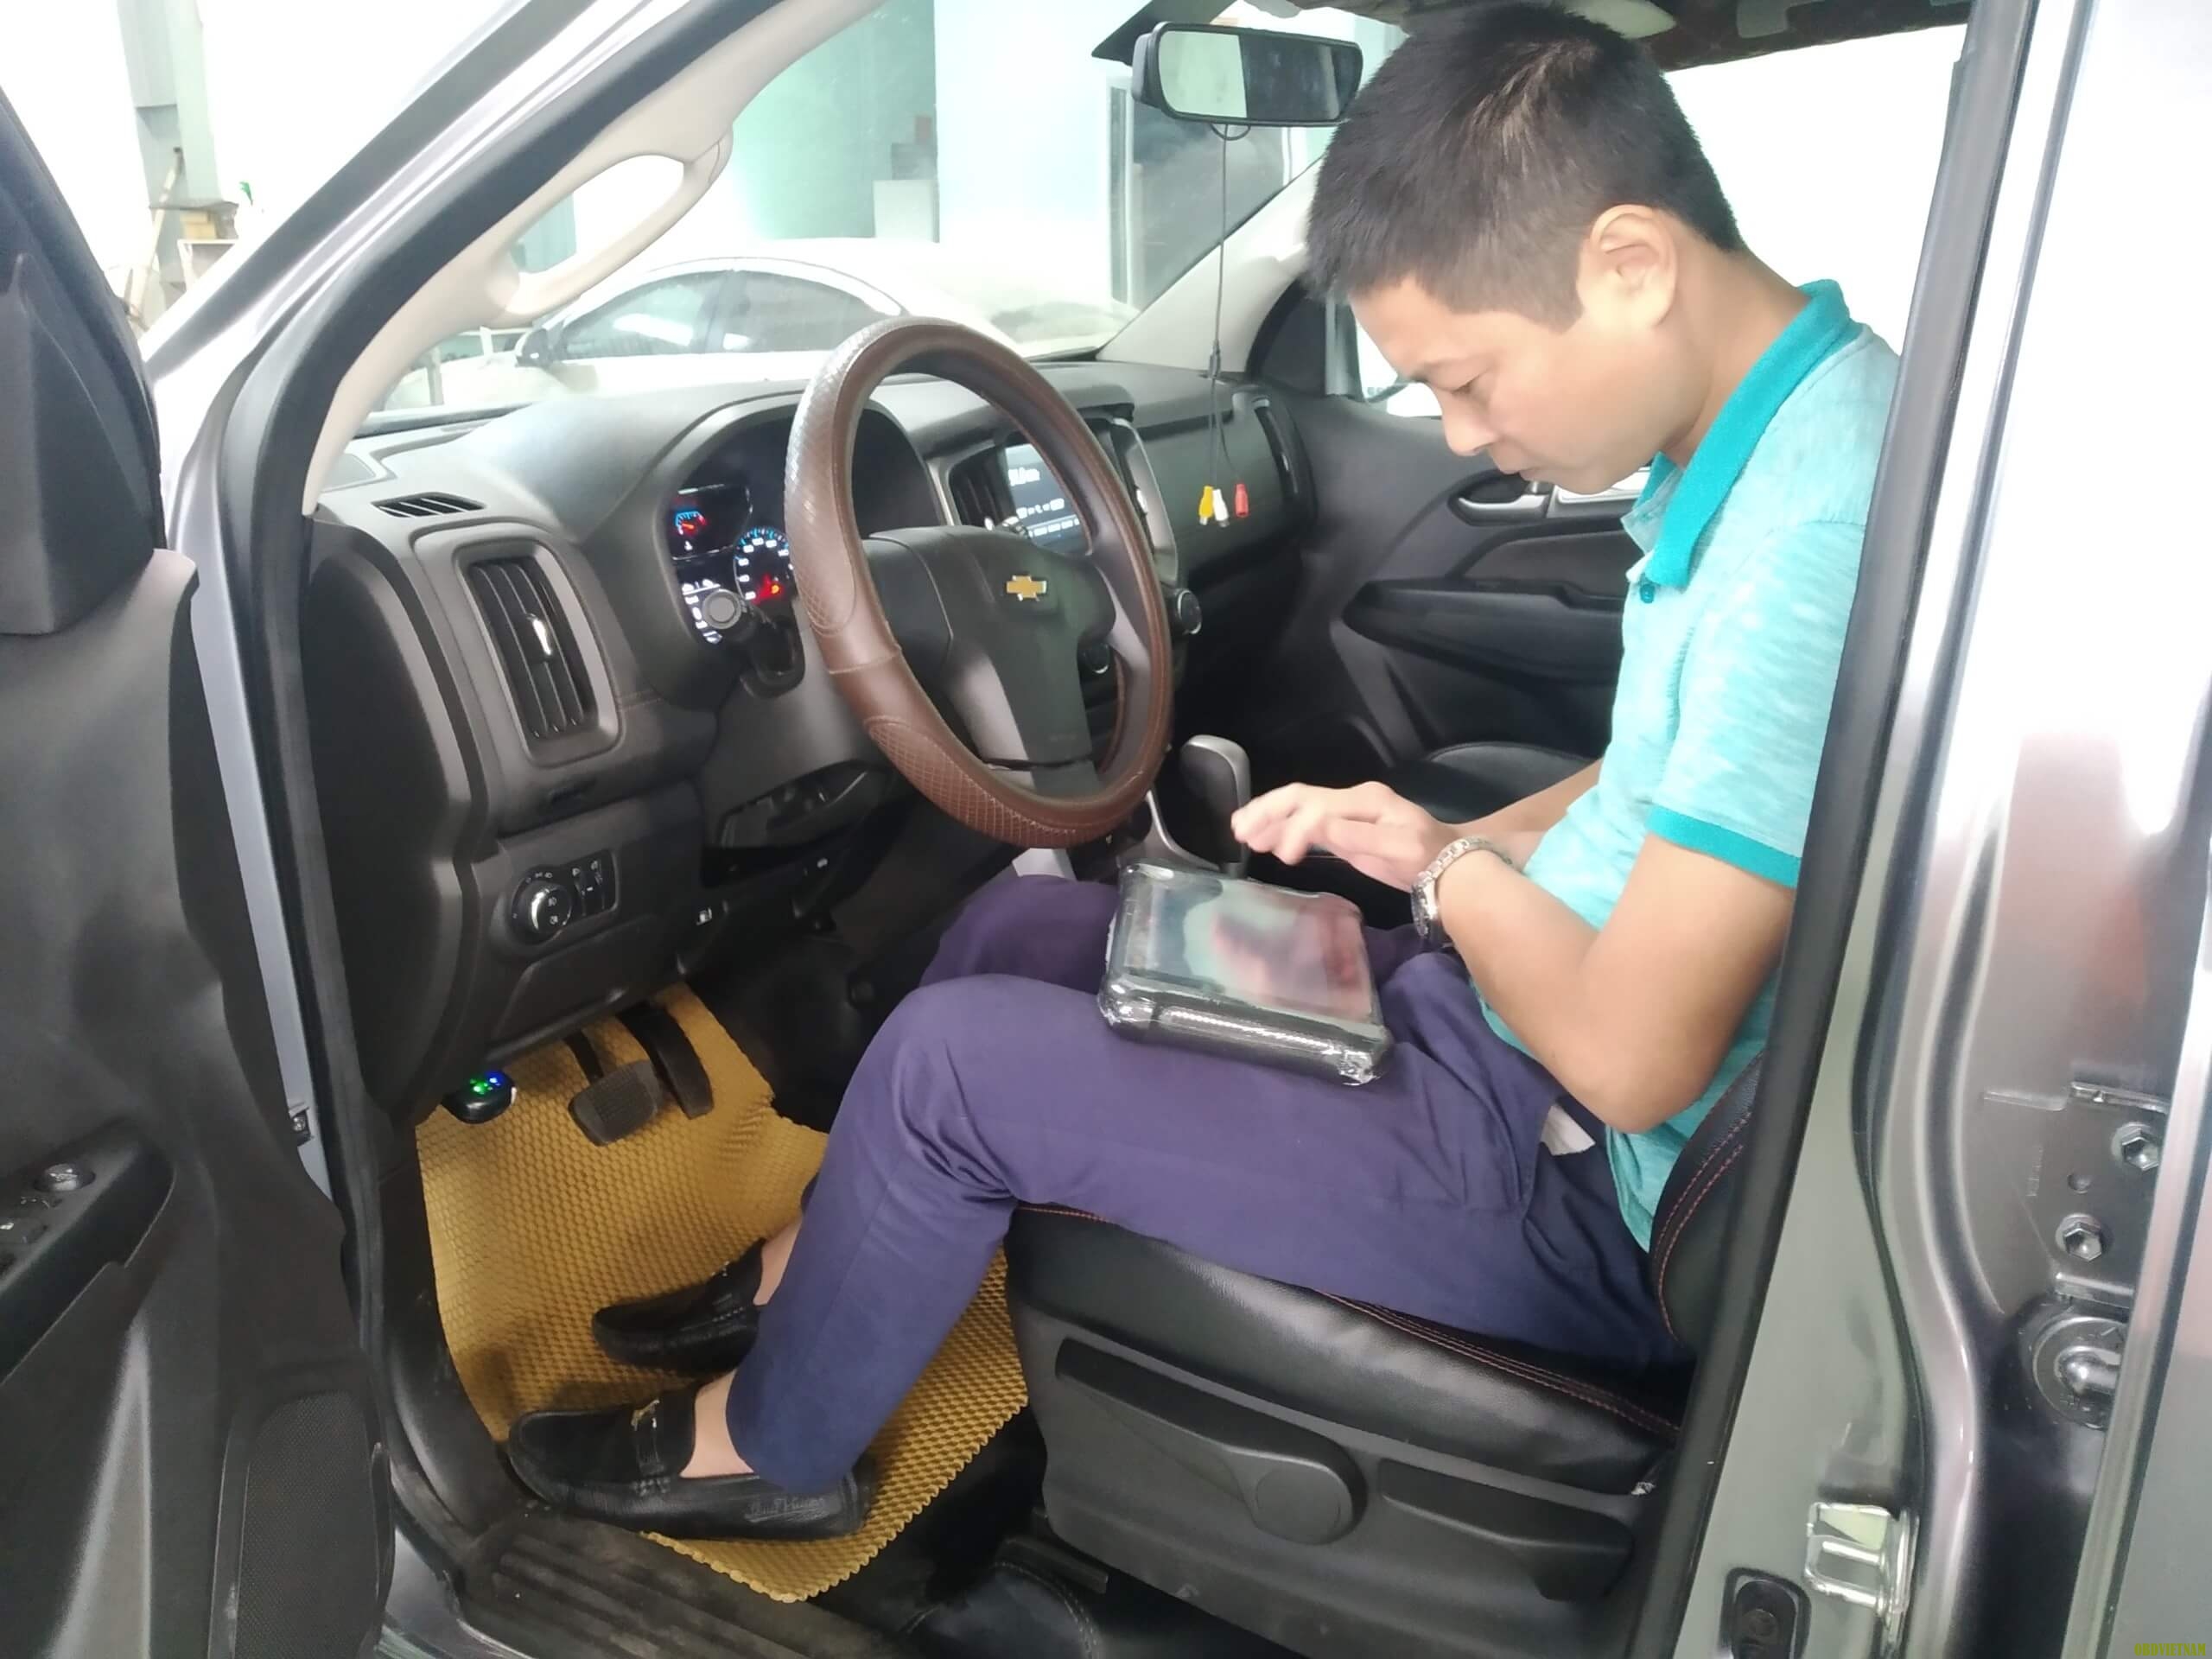 Anh/Em Kỹ Thuật Viên đang test MS906BT Trên xe Chevrolet